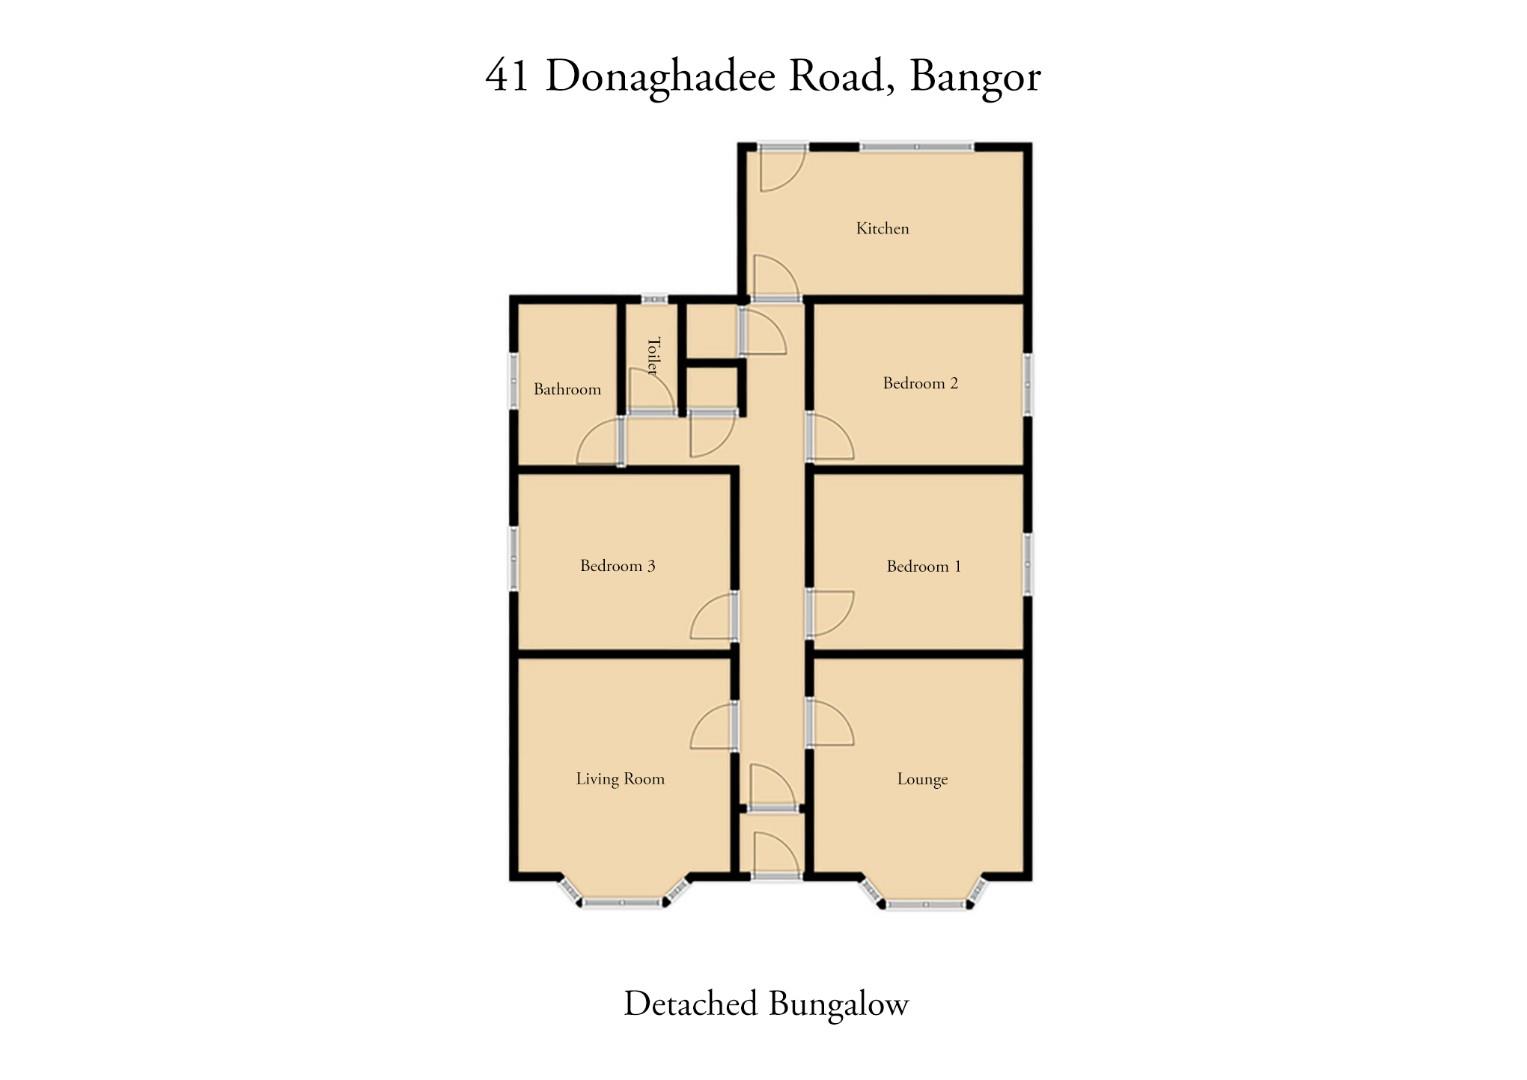 41 Donaghadee Road